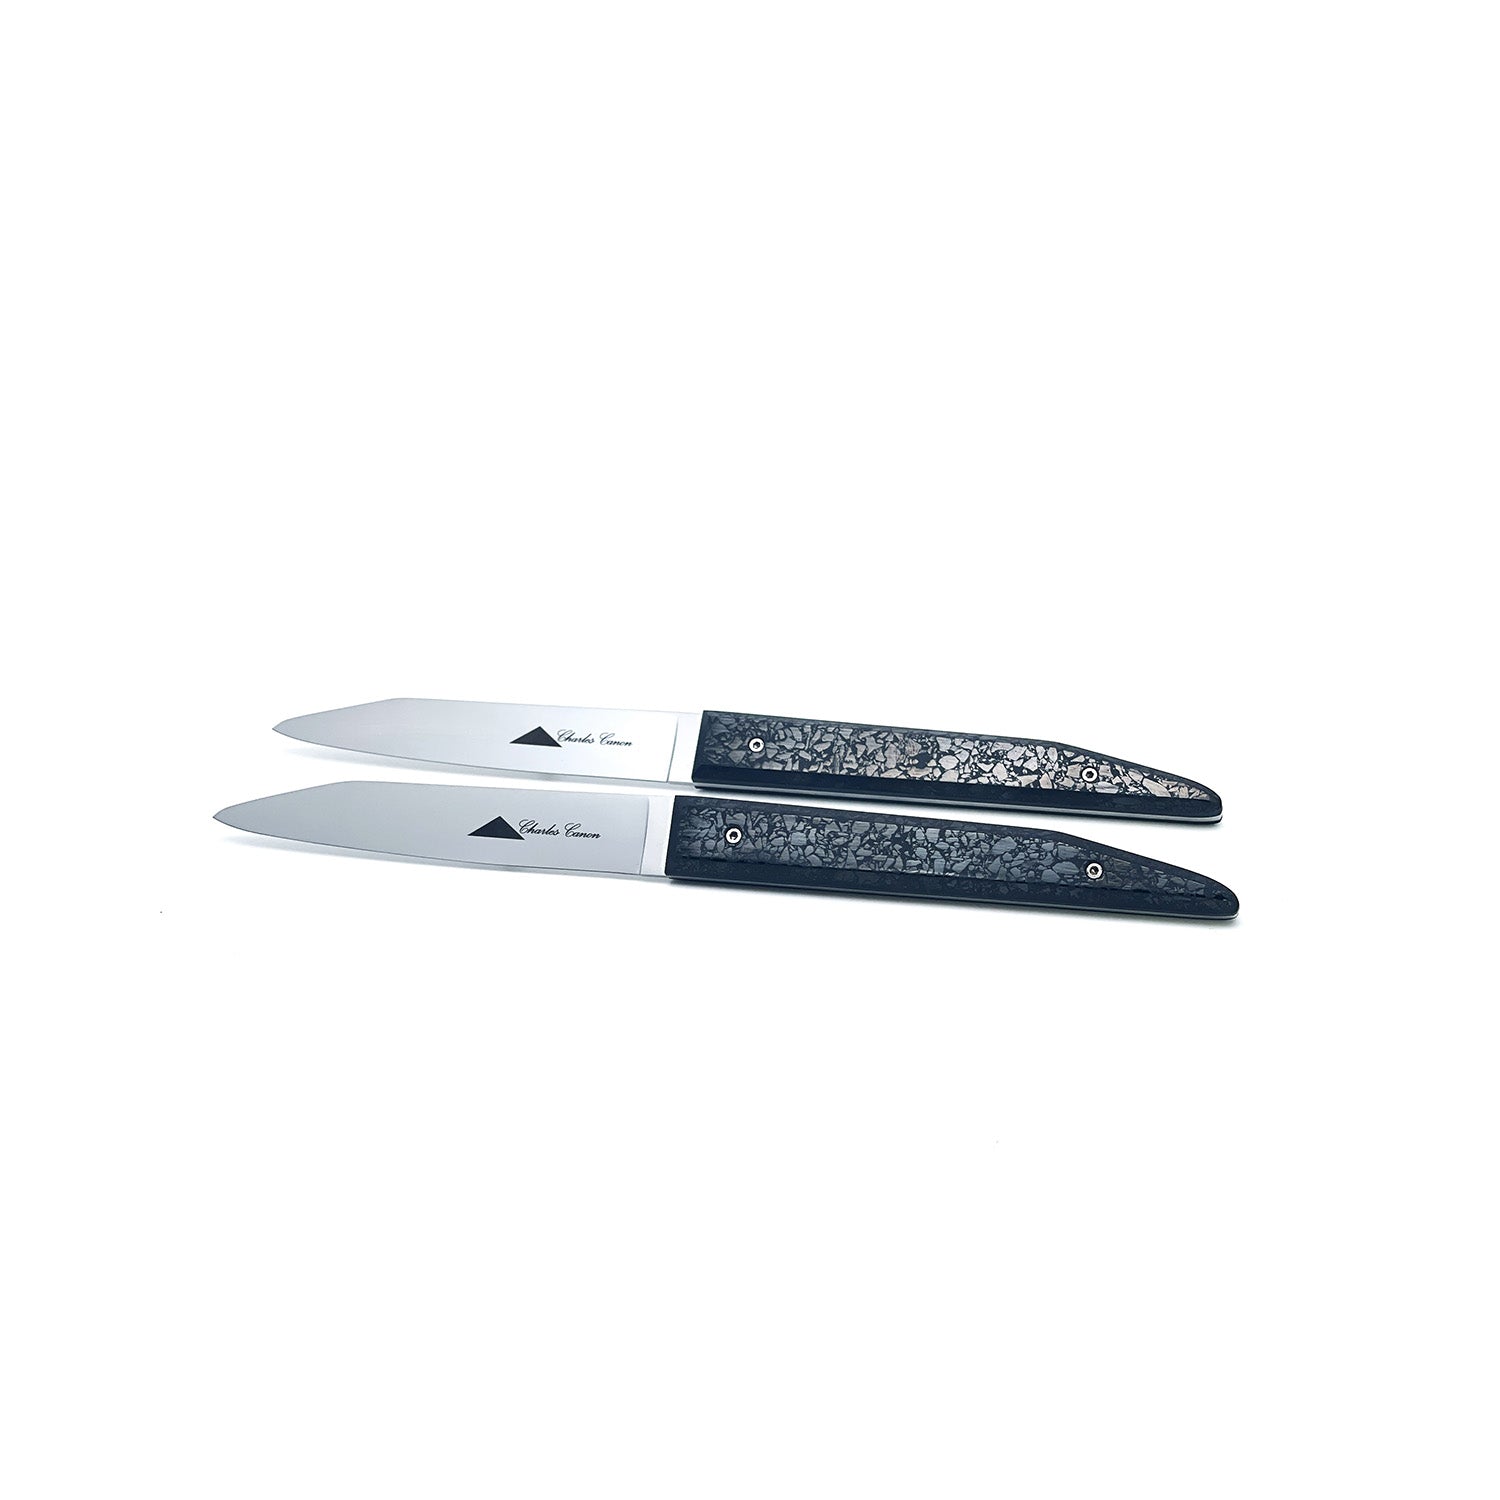 Coffret duo: 2 couteaux de table avec manche en charbon poli